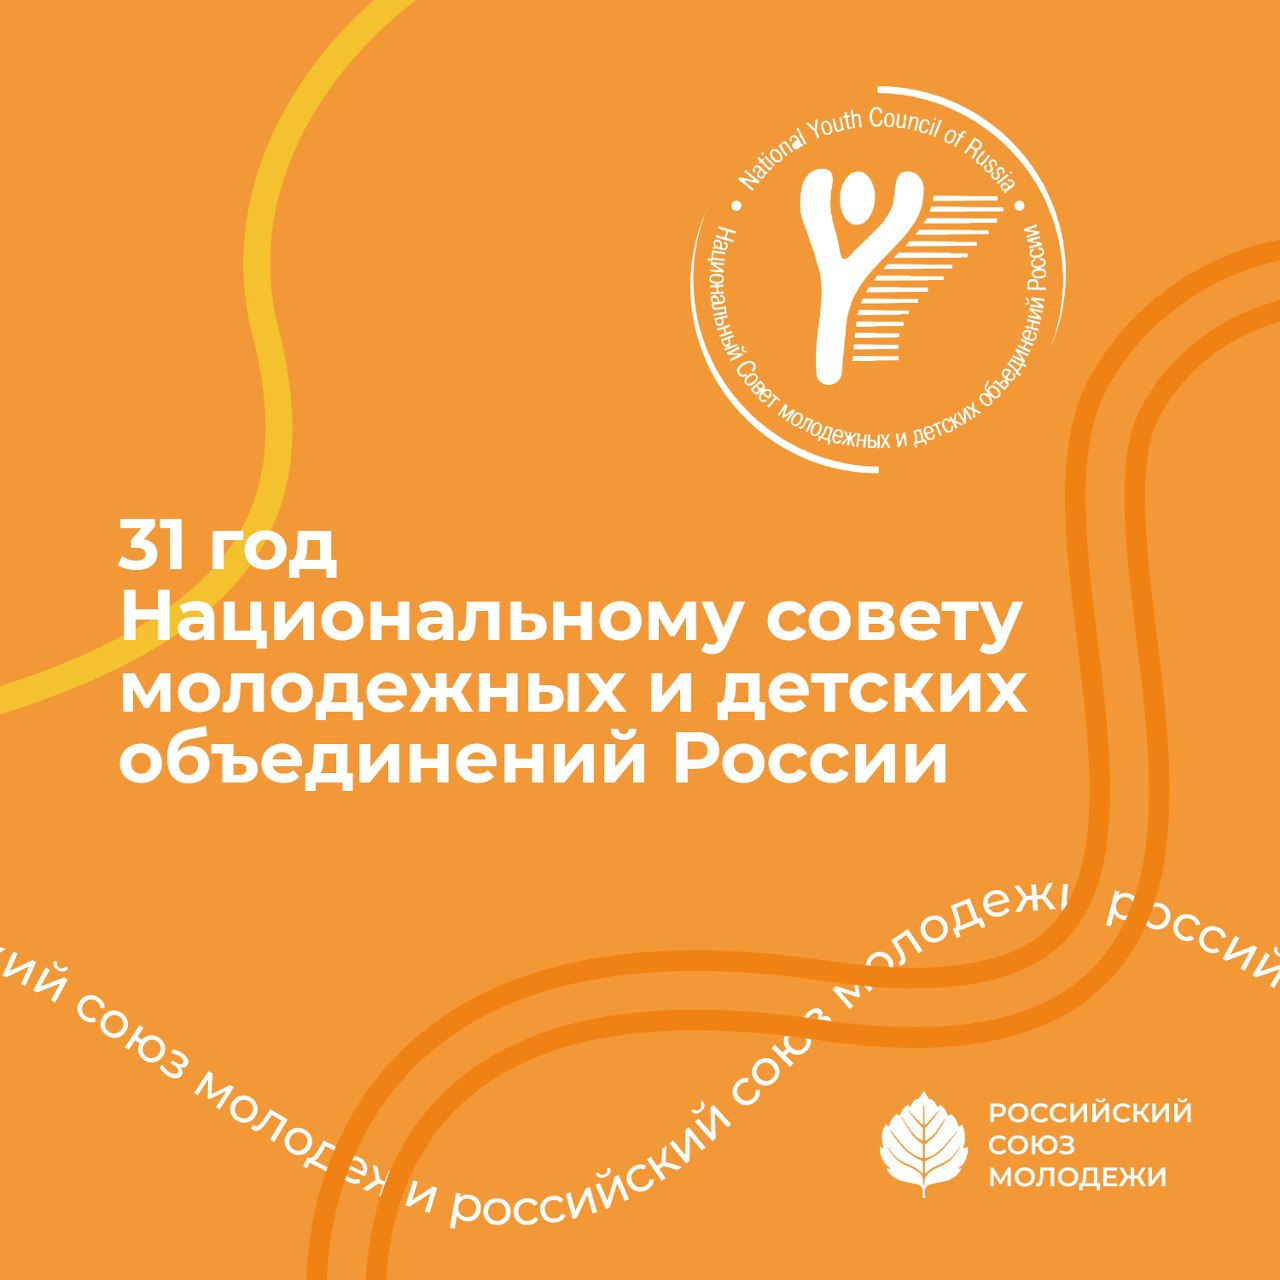 РСМ поздравляет Национальный Совет молодежных и детских объединений России с 31-летием